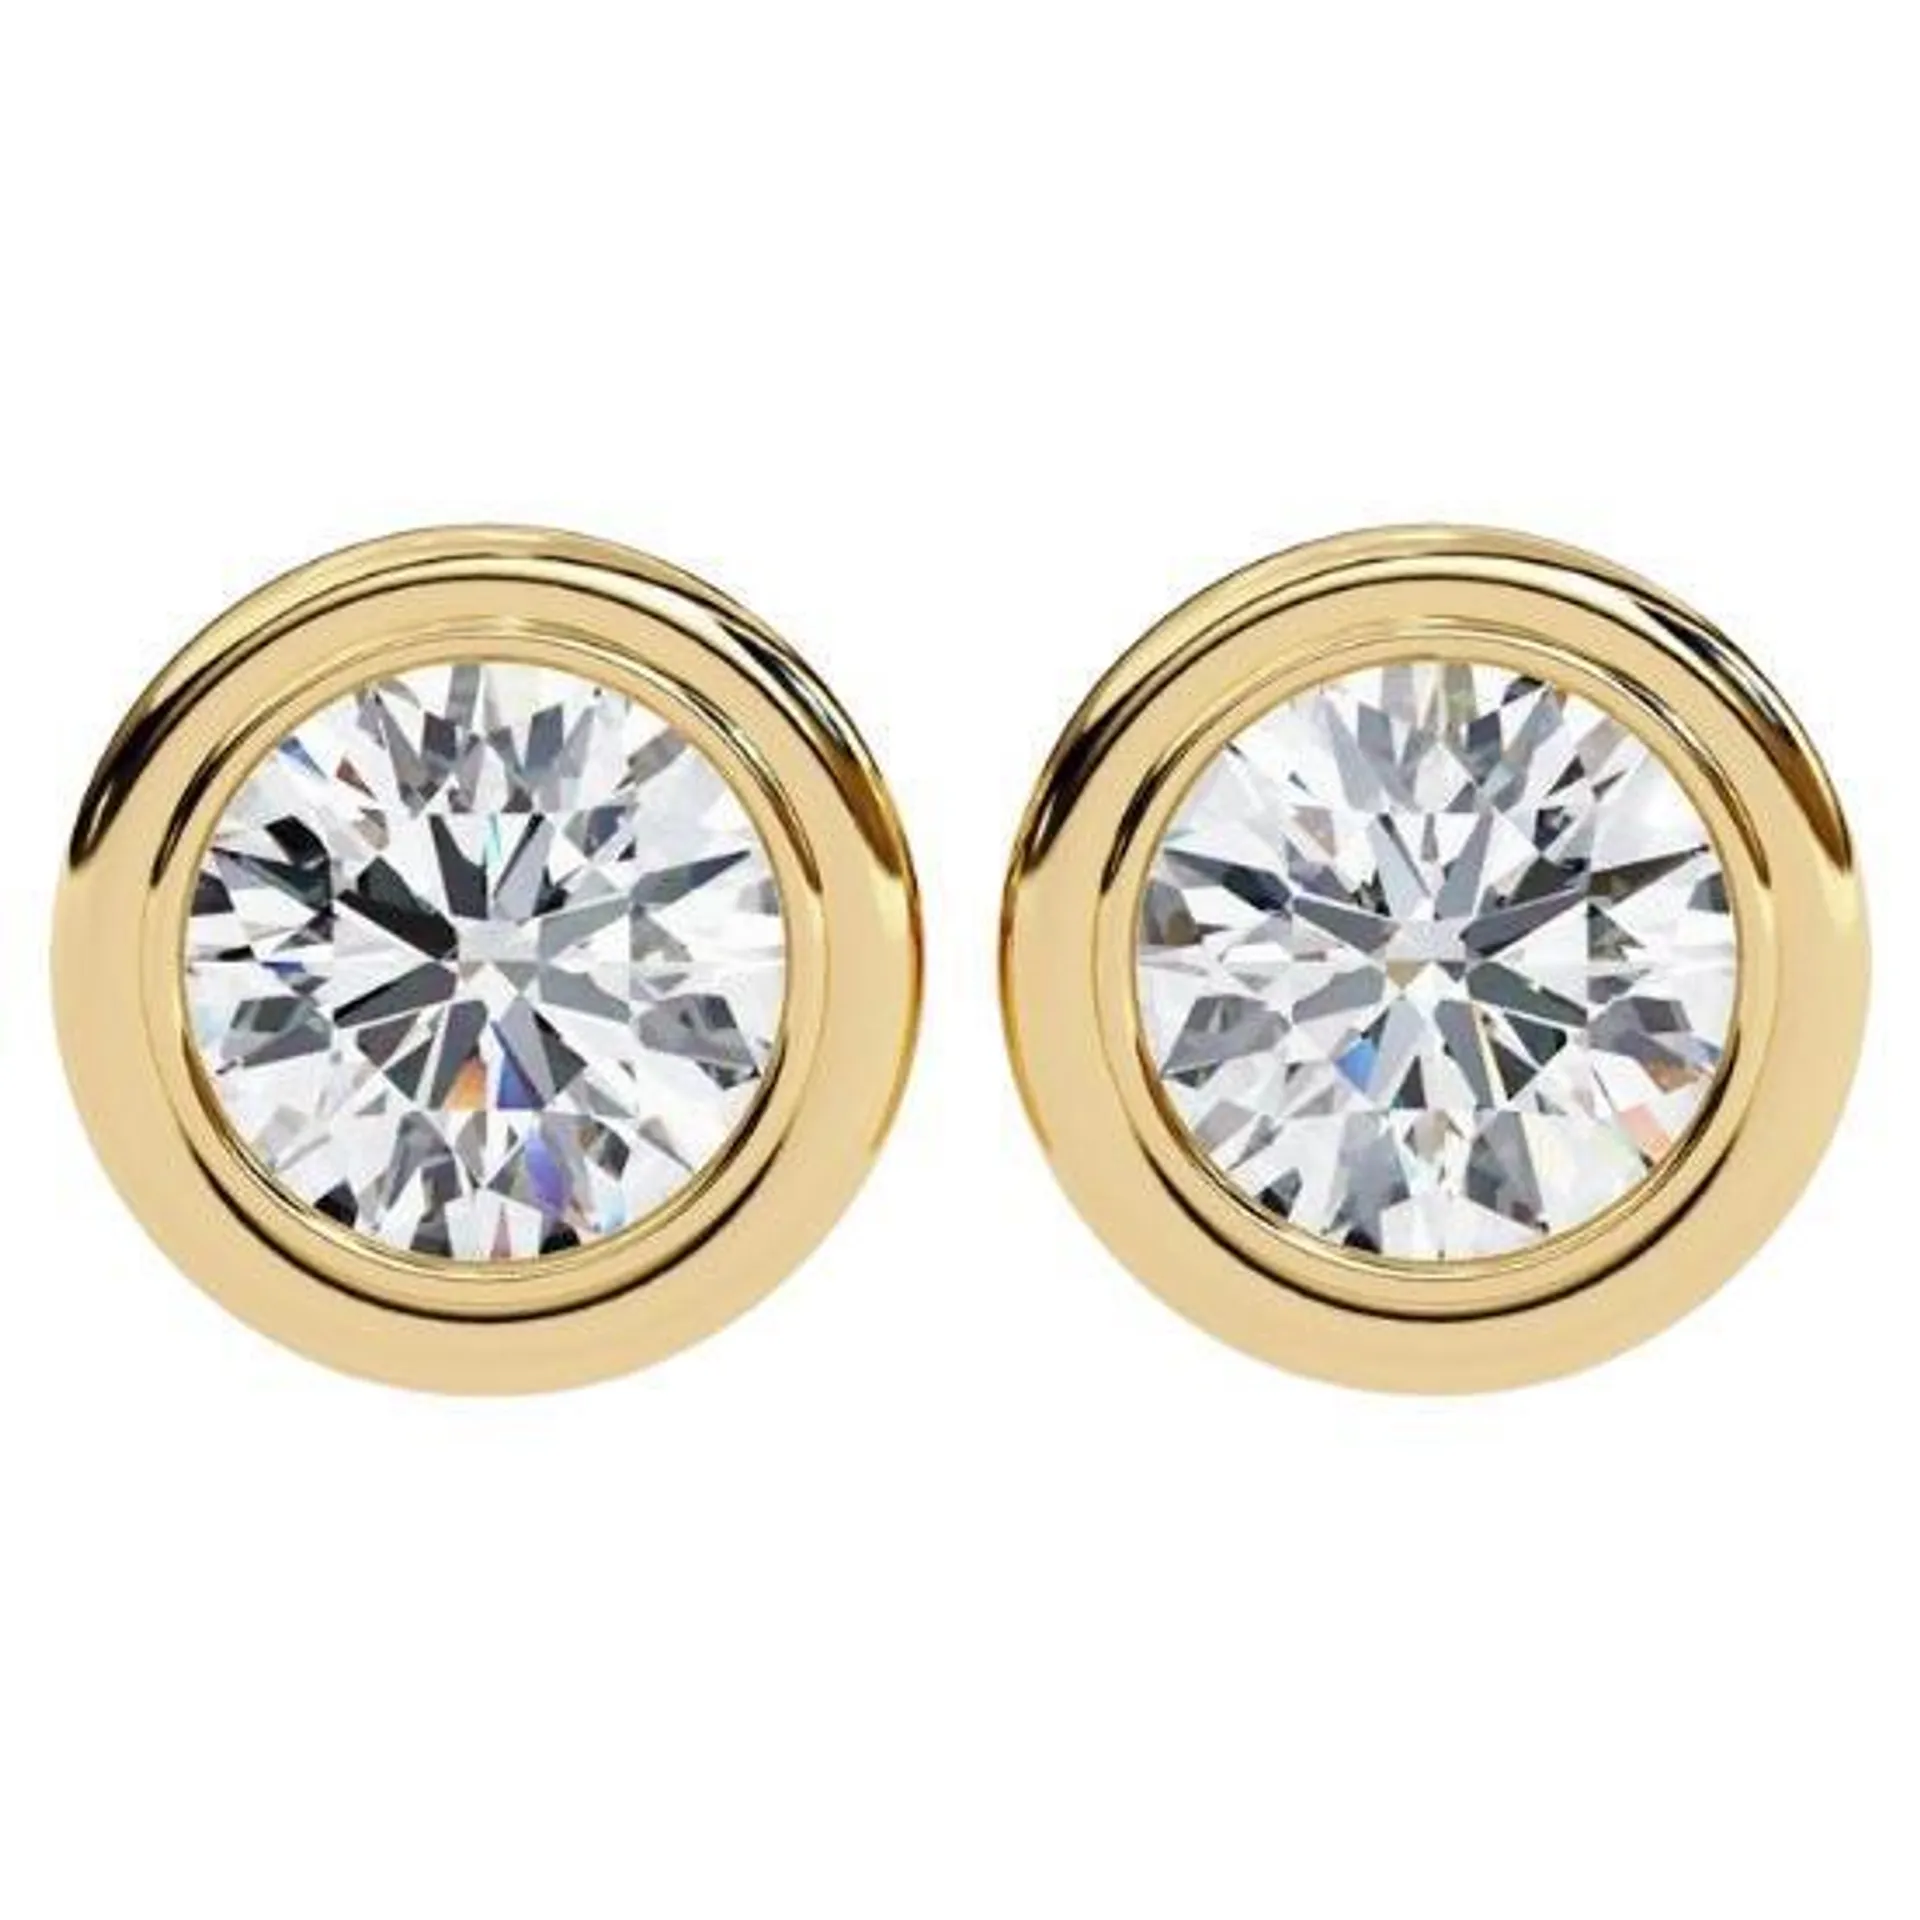 Diamond Bezel Stud Earrings 1/2 carat total weight 14k solid gold